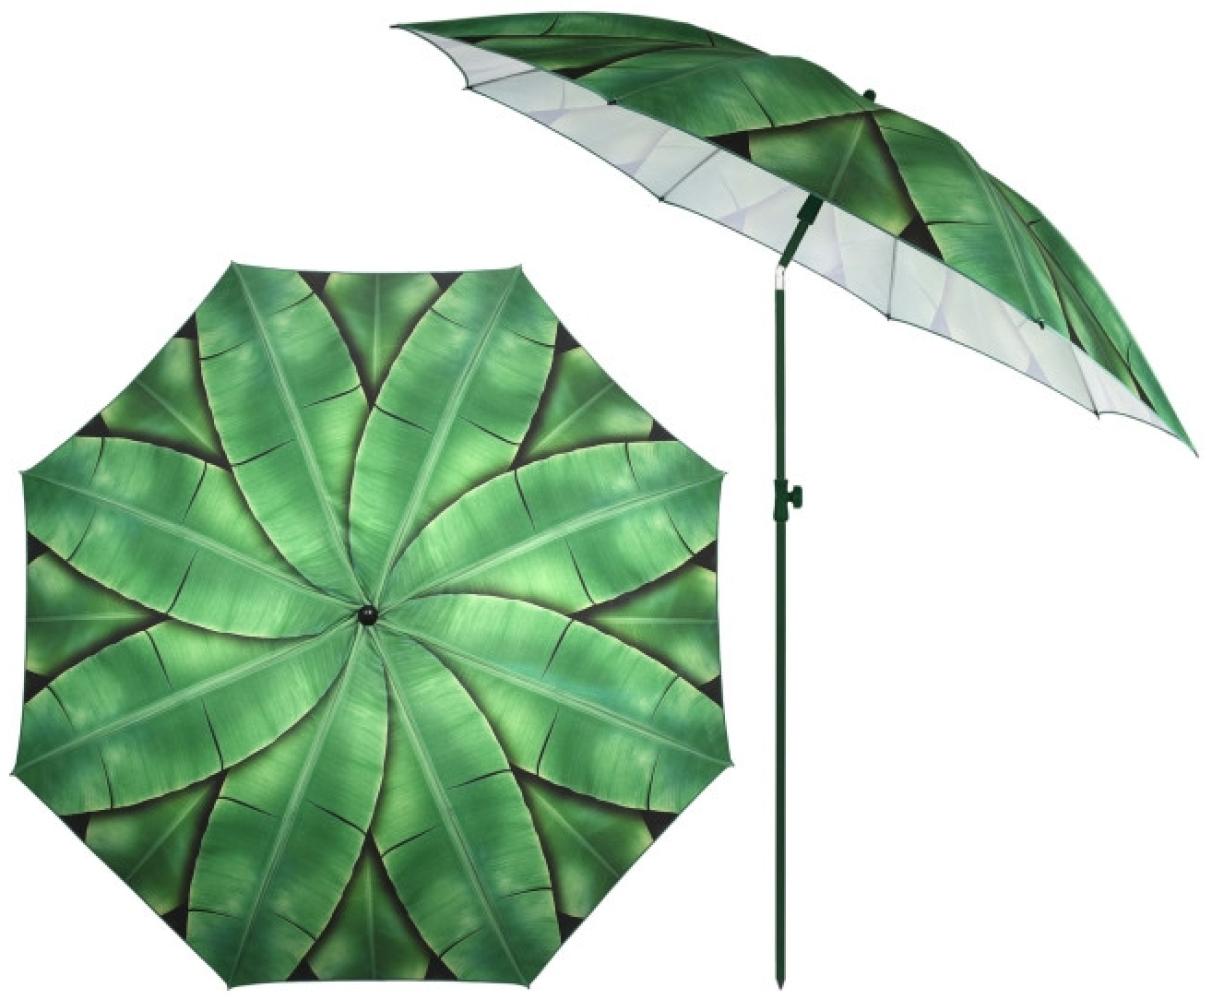 Rivanto Sonnenschirm Bananenblätter mit Metallstiel, Ø 184 cm, Höhe 226 cm, höhenverstellbar, kann abgewinkelt werden, grüne Bananenblätter Optik Bild 1